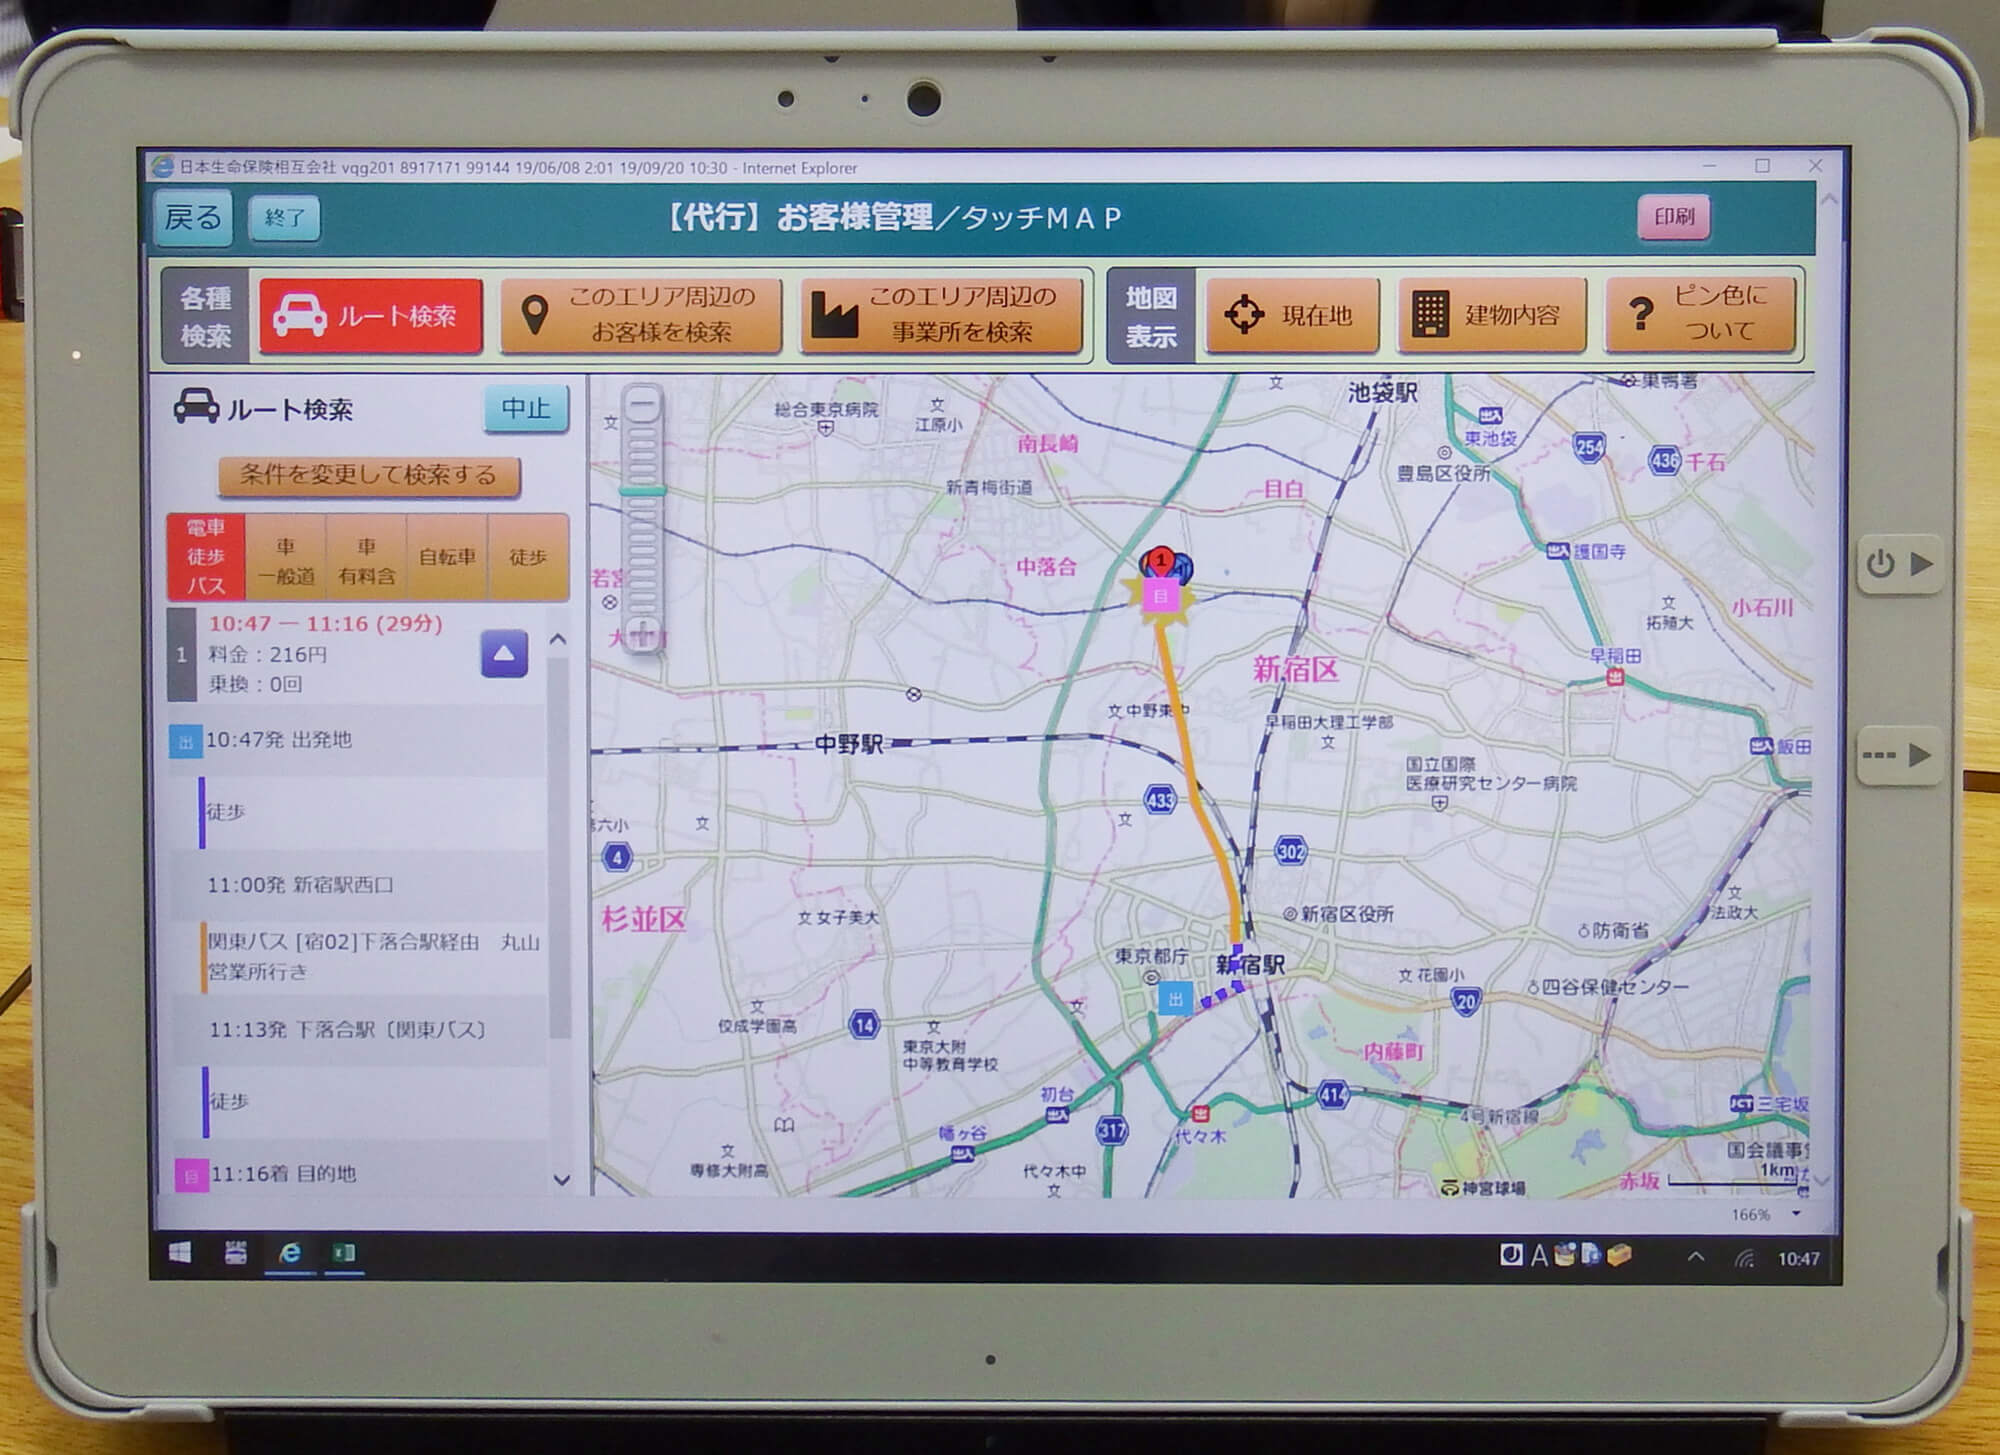 地図情報機能(タッチマップ)における、お客様先までのルート検索例。画面はバス経路